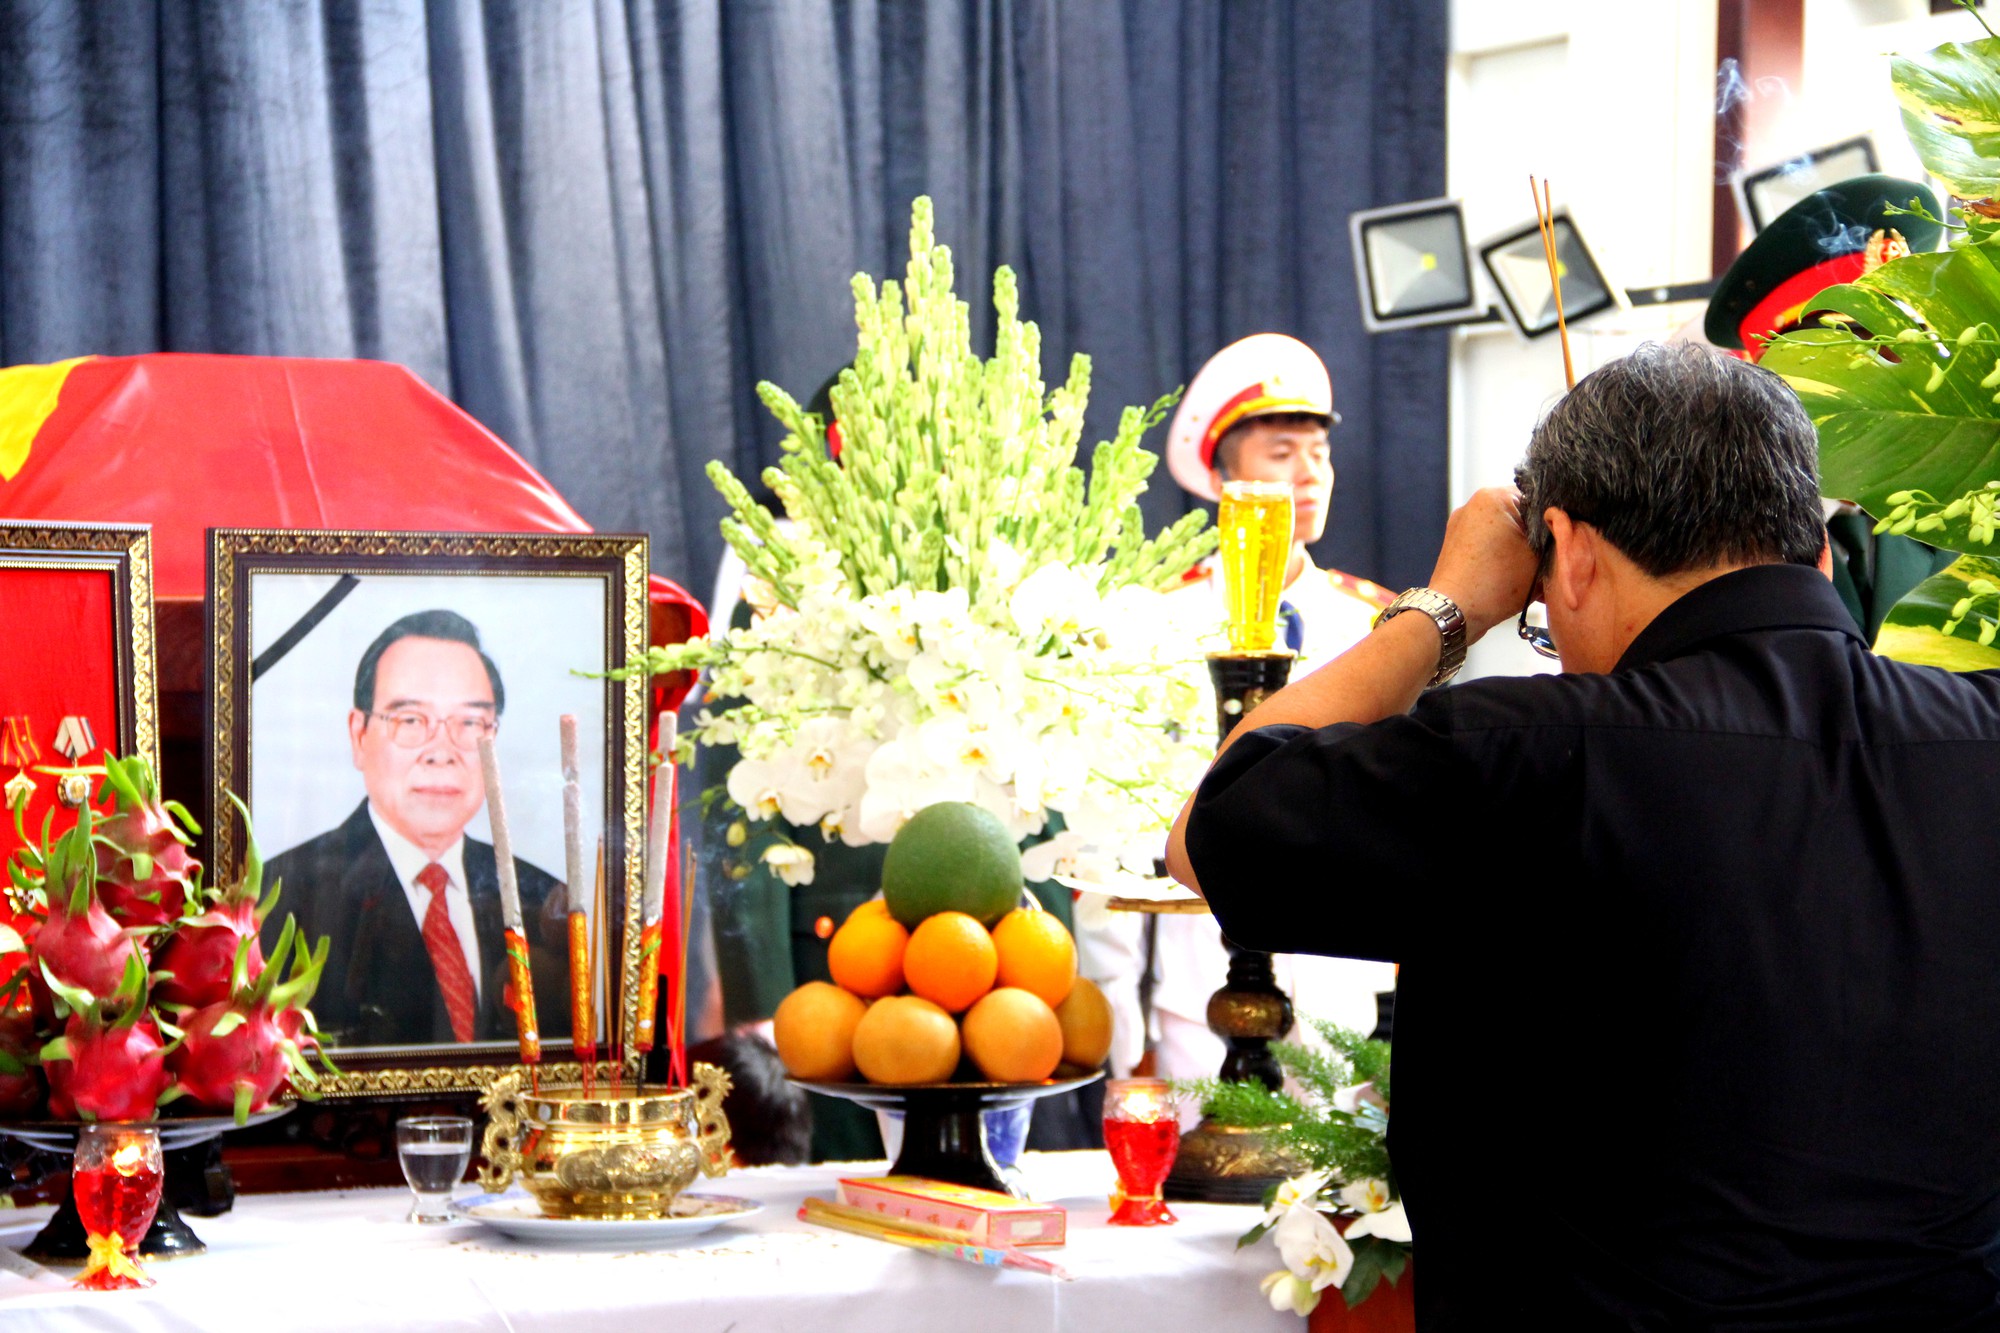 Nguyên Thủ tướng Nguyễn Tấn Dũng tham gia chuẩn bị lễ tang cố Thủ tướng Phan Văn Khải - Ảnh 3.